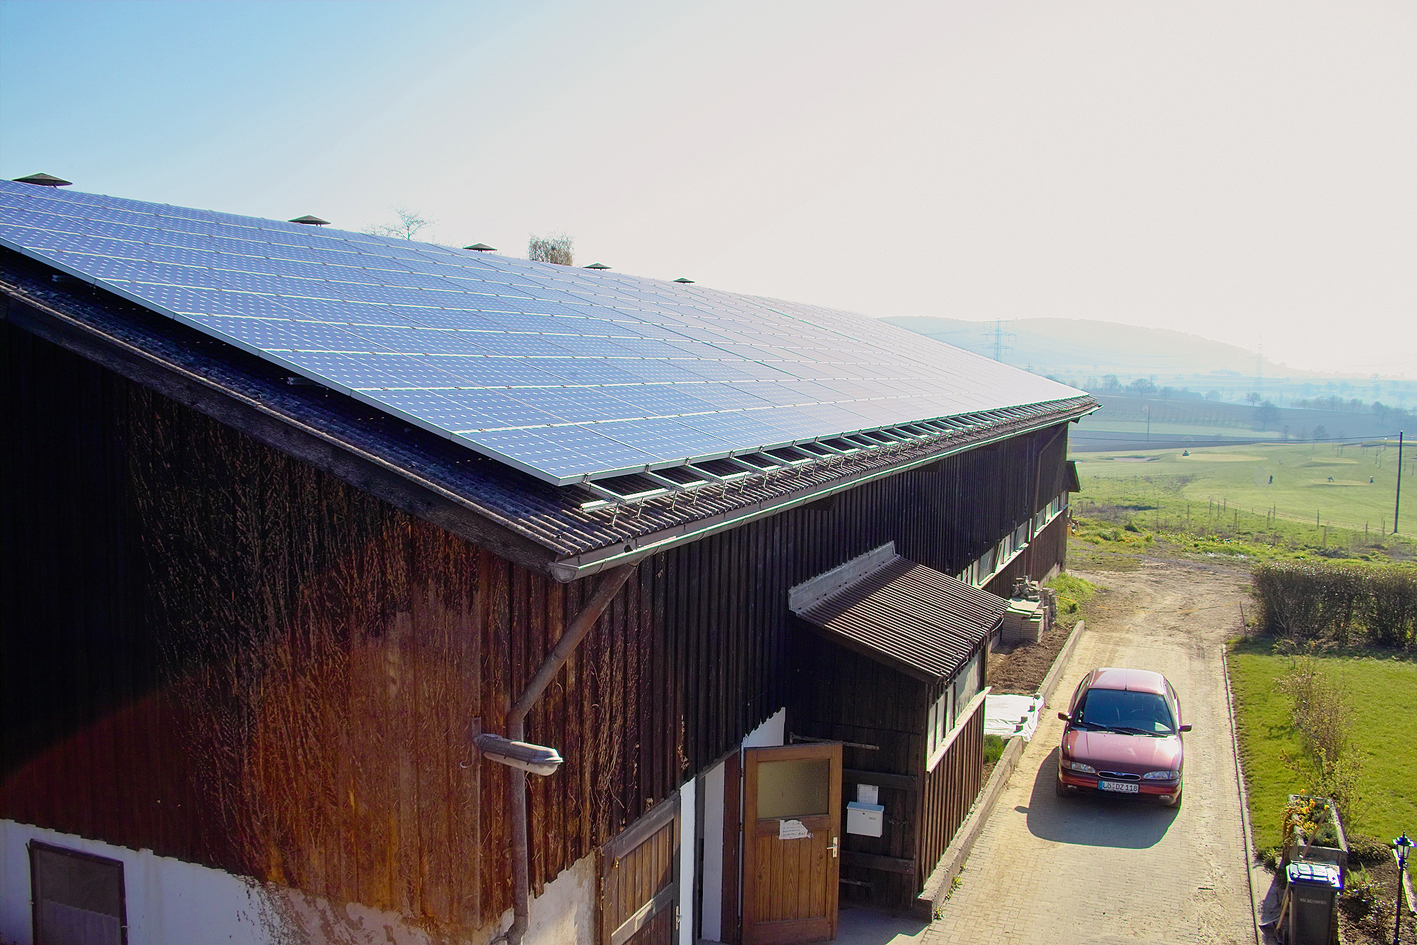 Alte Photovoltaik-Anlagen, wie dieses 30 Kilowatt große System auf einem Landwirtschaftsgebäude, fallen in den nächsten Jahren aus der EEG-Förderung.